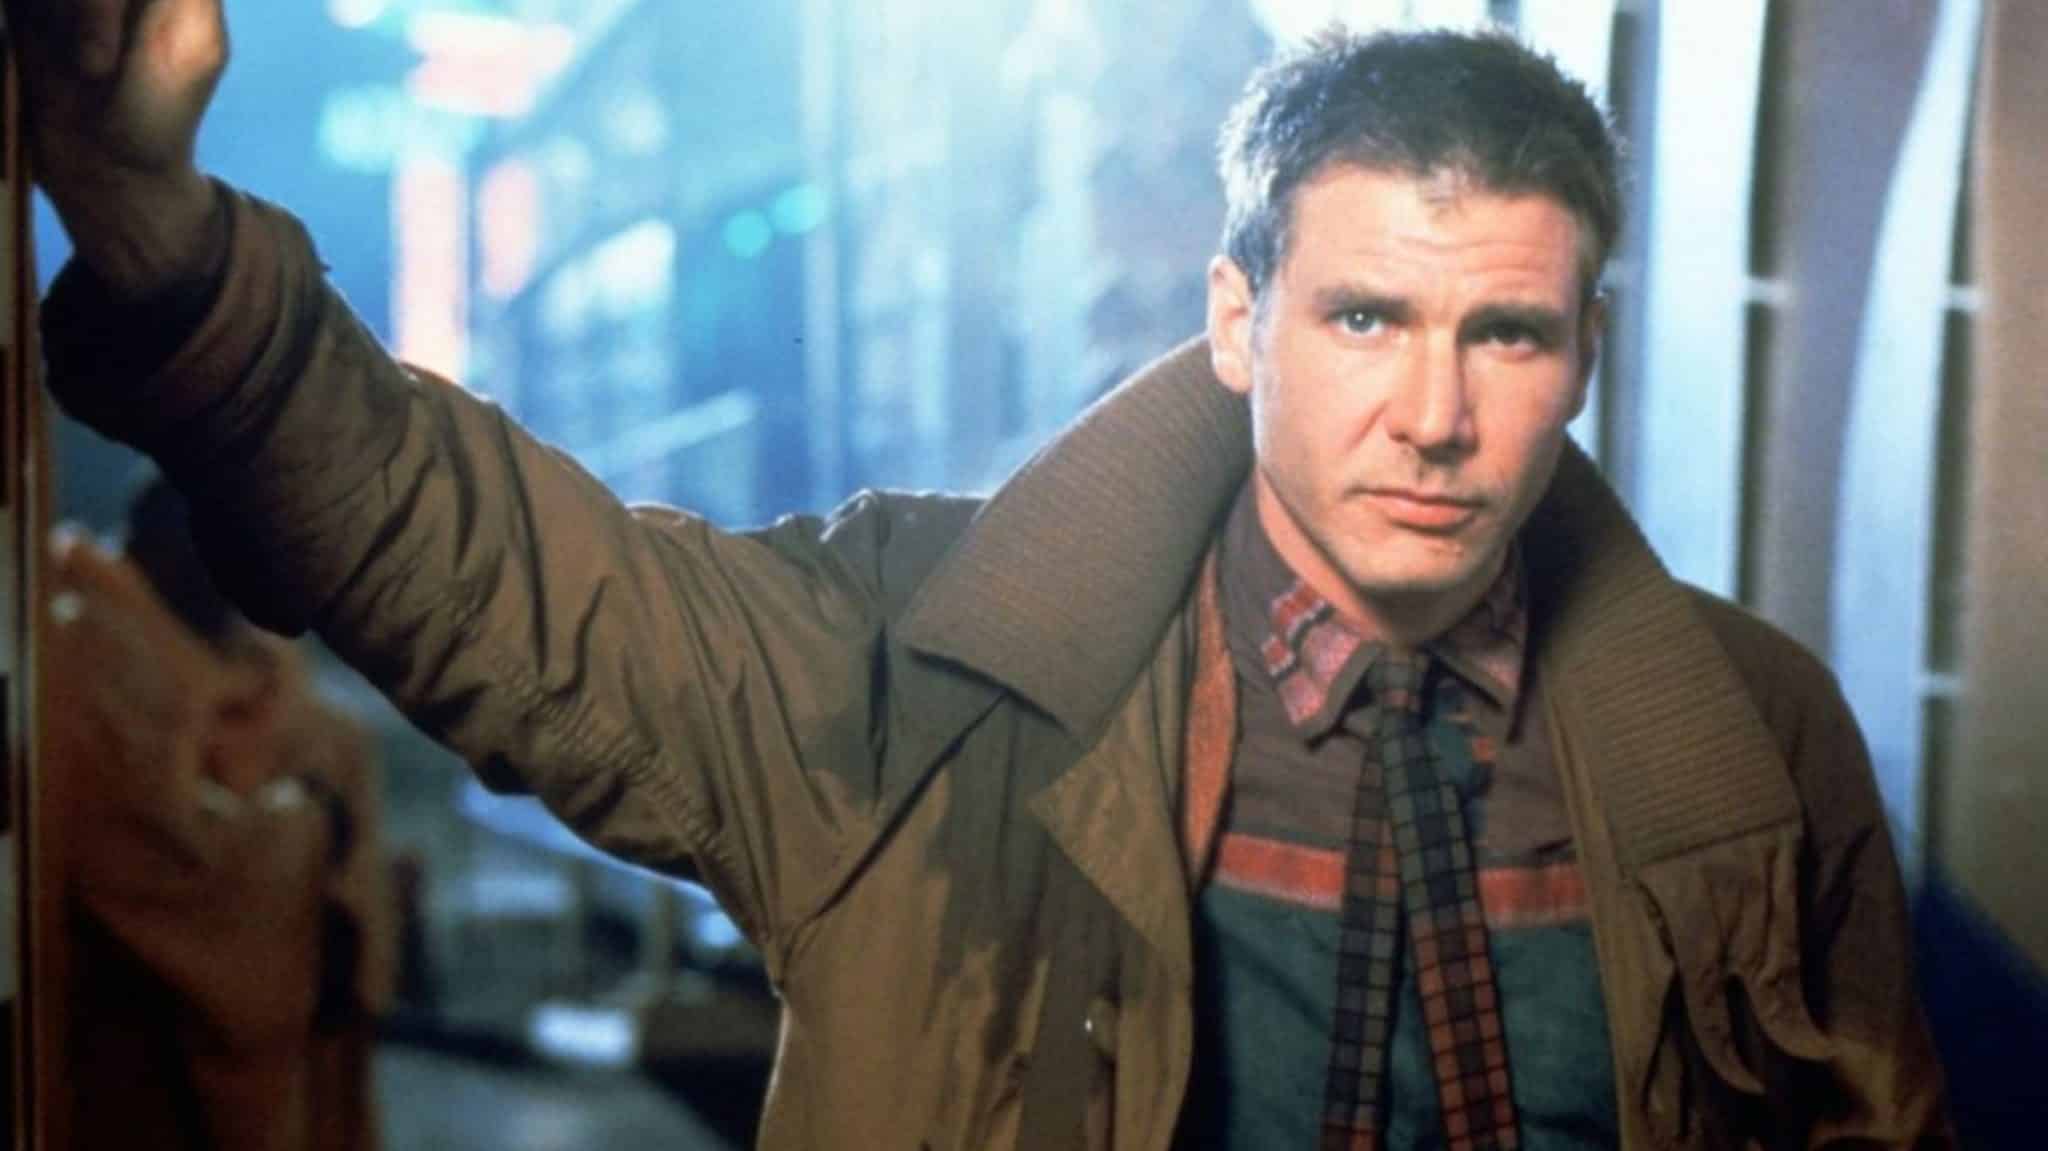 devotudoaocinema.com.br - "Blade Runner - O Caçador de Androides", de Ridley Scott